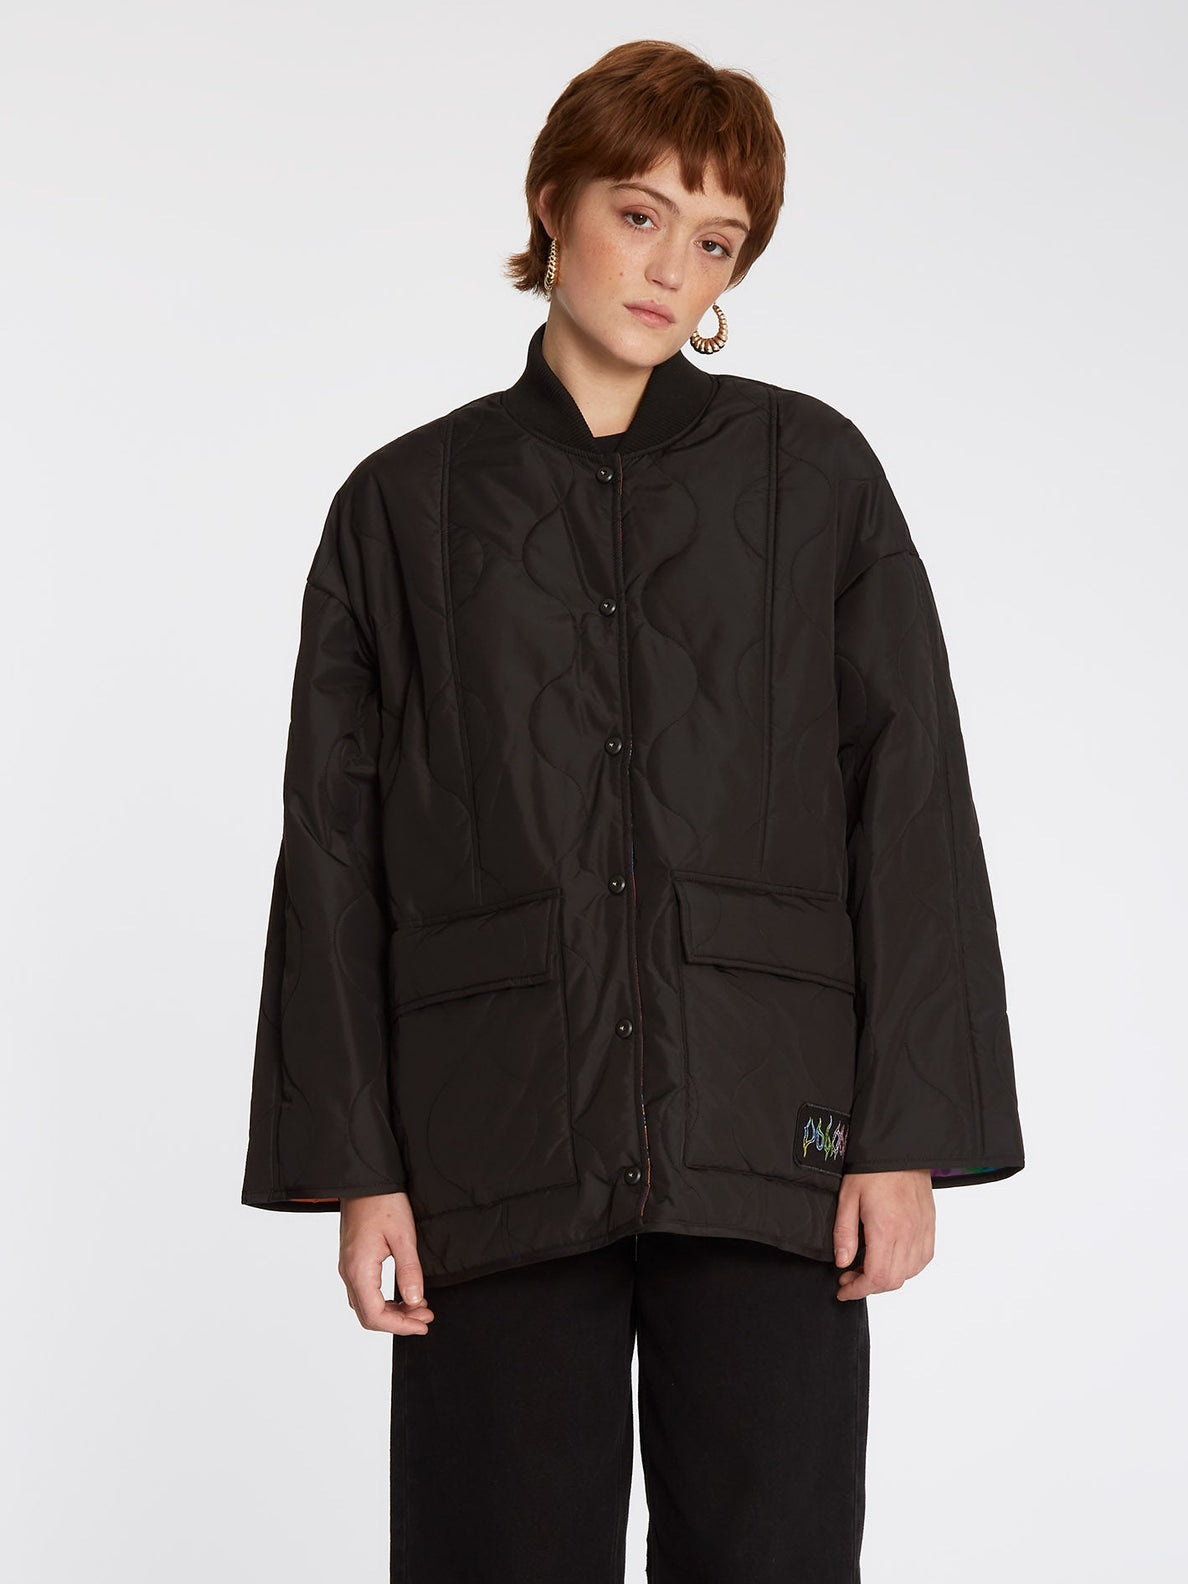 Chrissie Abbott X French Jacket (Reversible) - BLACK (B1732204_BLK) [F]